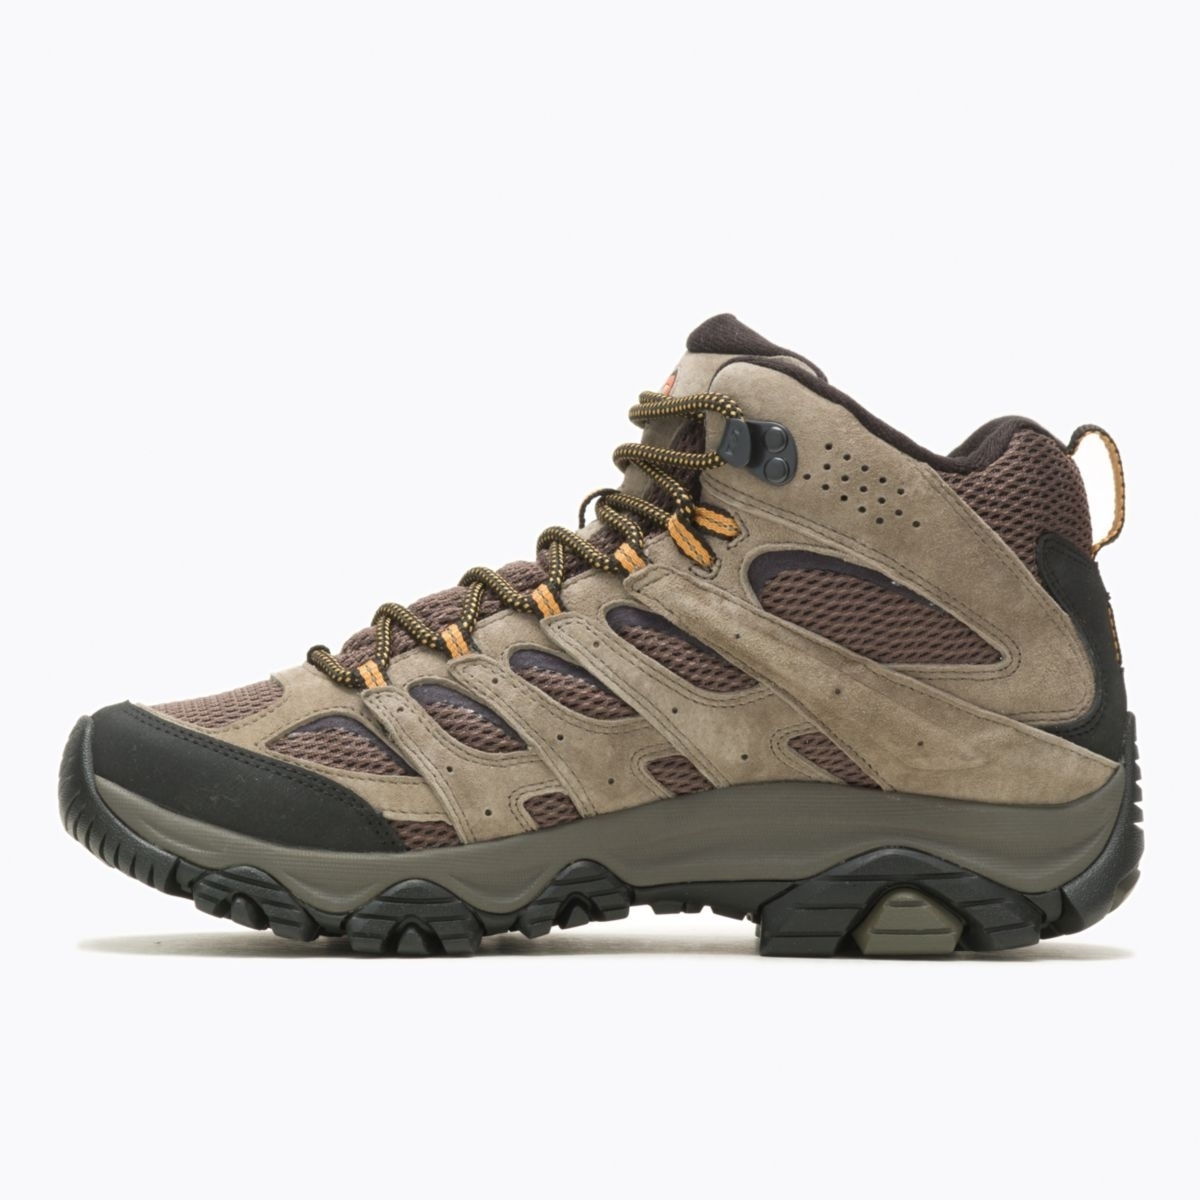 Merrell Men's Moab 3 Mid GORE-TEX Hiking Boot Walnut - J035795 WALNUT - WALNUT, 8.5